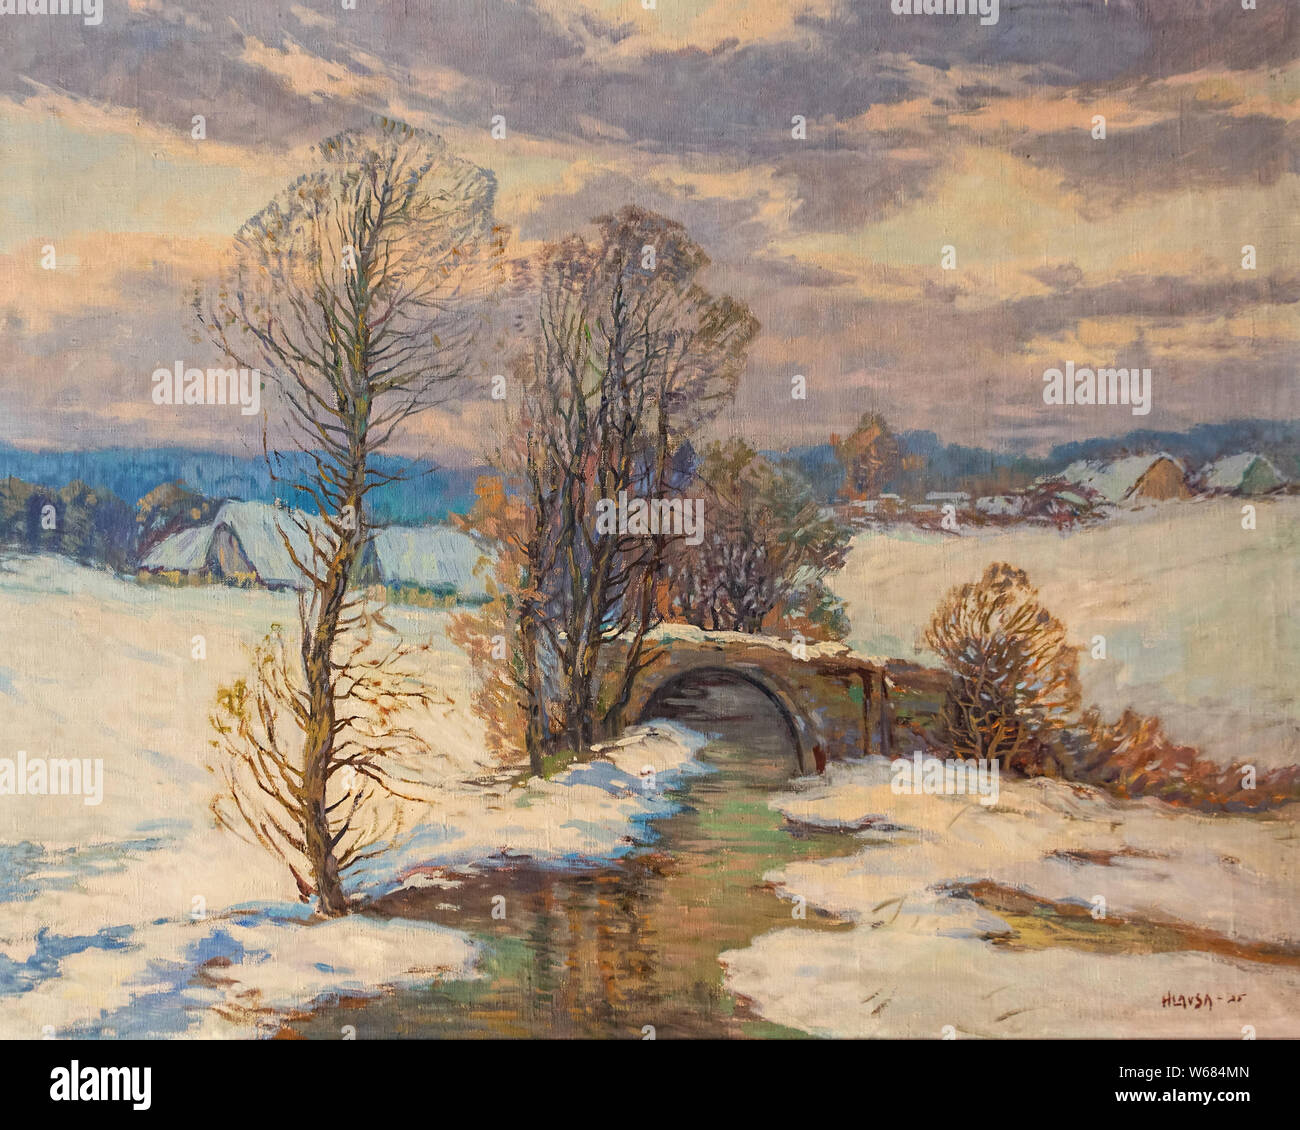 Ancienne peinture à l'huile de paysage rural traditionnel avec l'hiver et un petit village tchèque Brook par le peintre tchèque Hlavsa de 1925 Banque D'Images